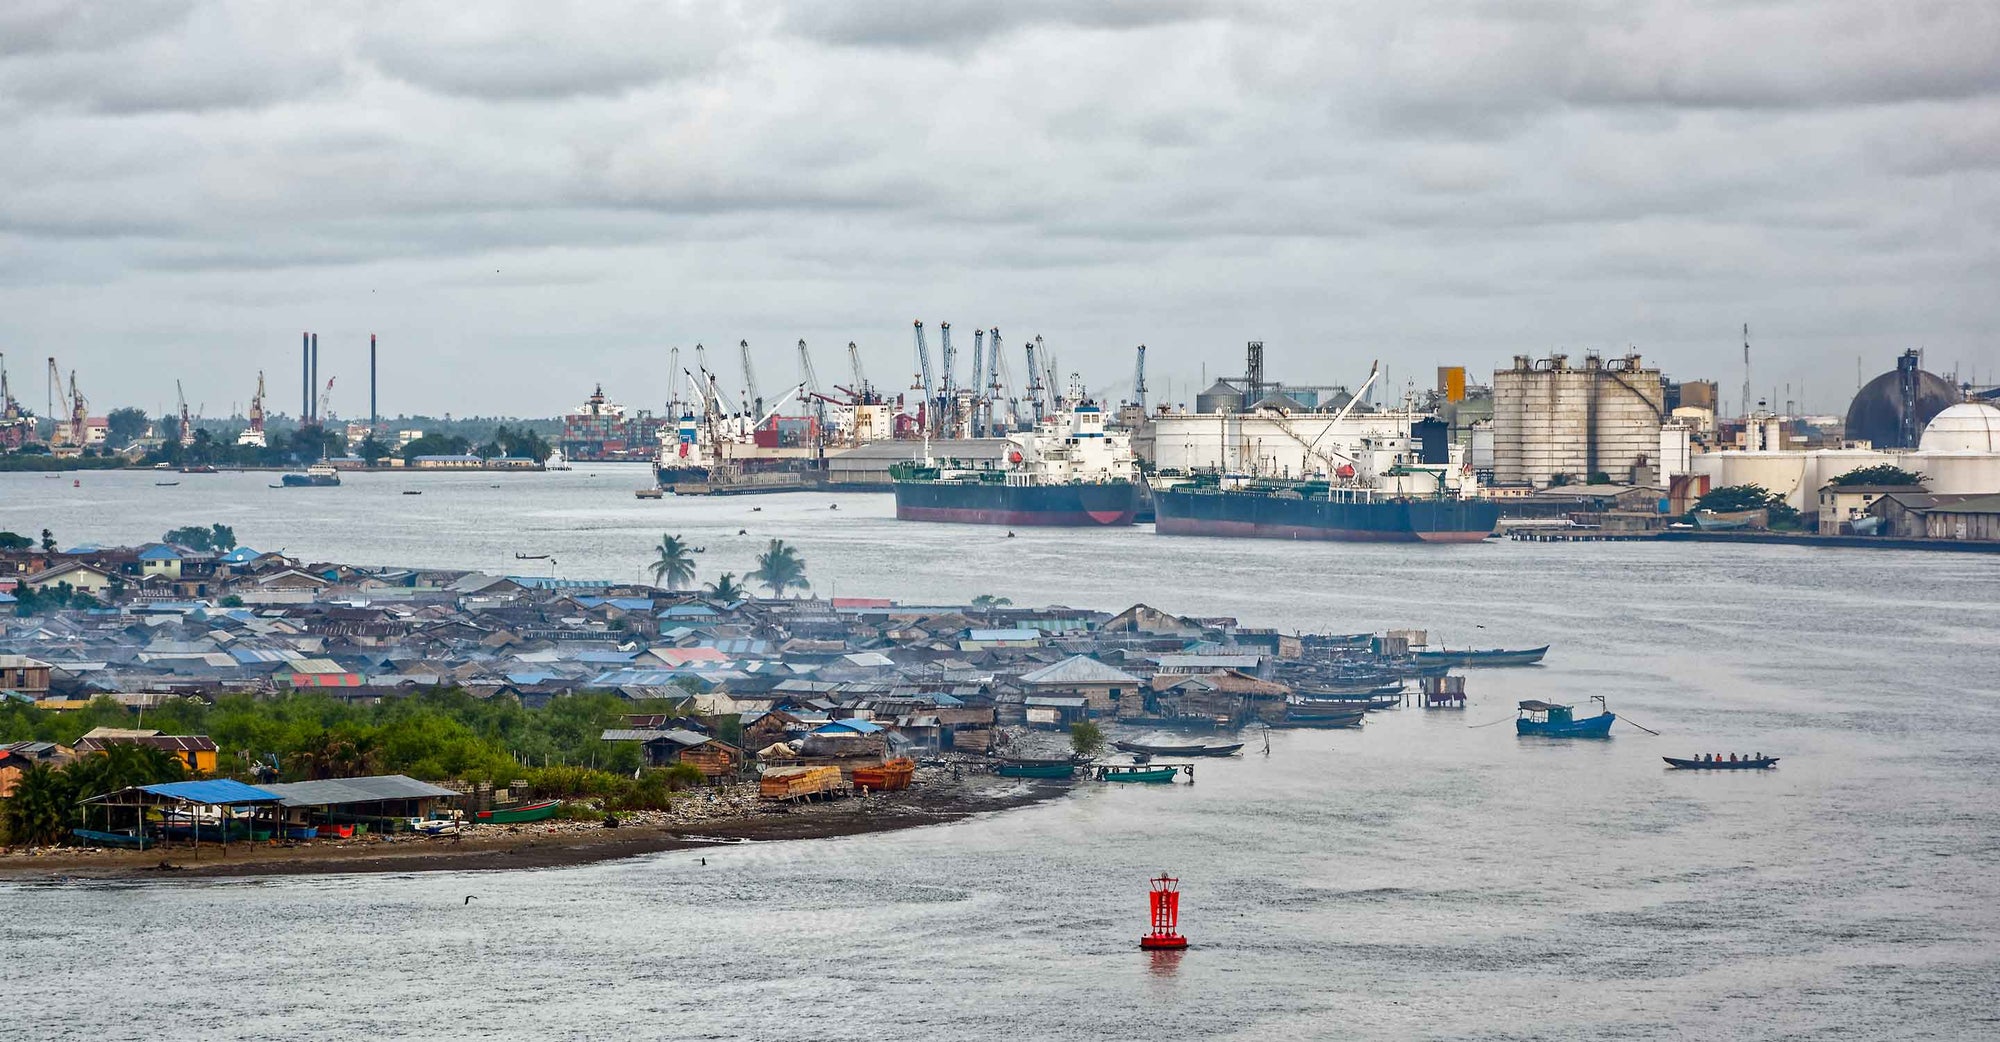 Panoramic shot of Port Harcourt, Nigeria.